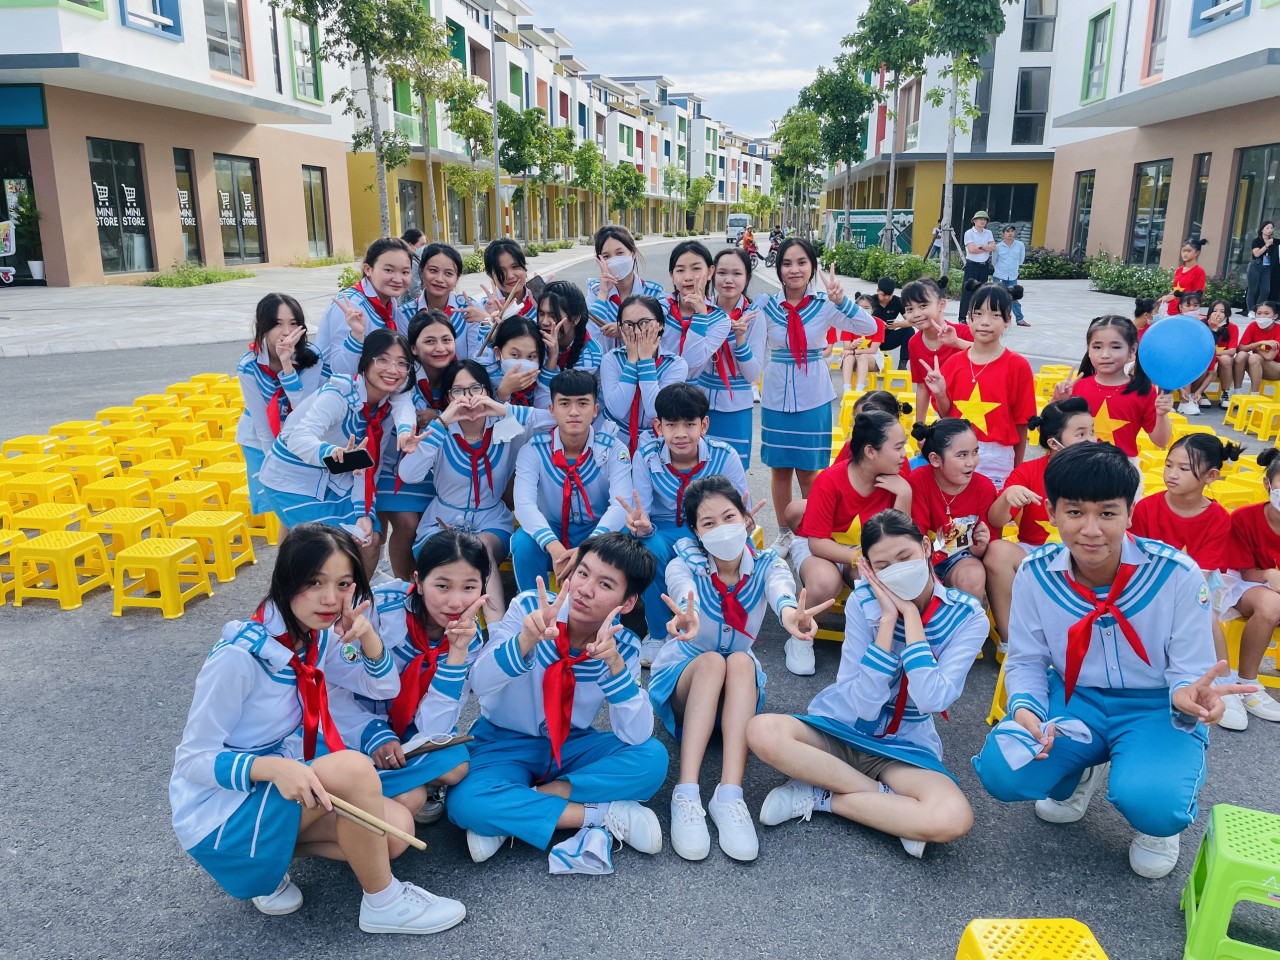 Hàng nghìn trẻ em Phú Quốc tham gia “đêm trăng thắp sáng ước mơ”